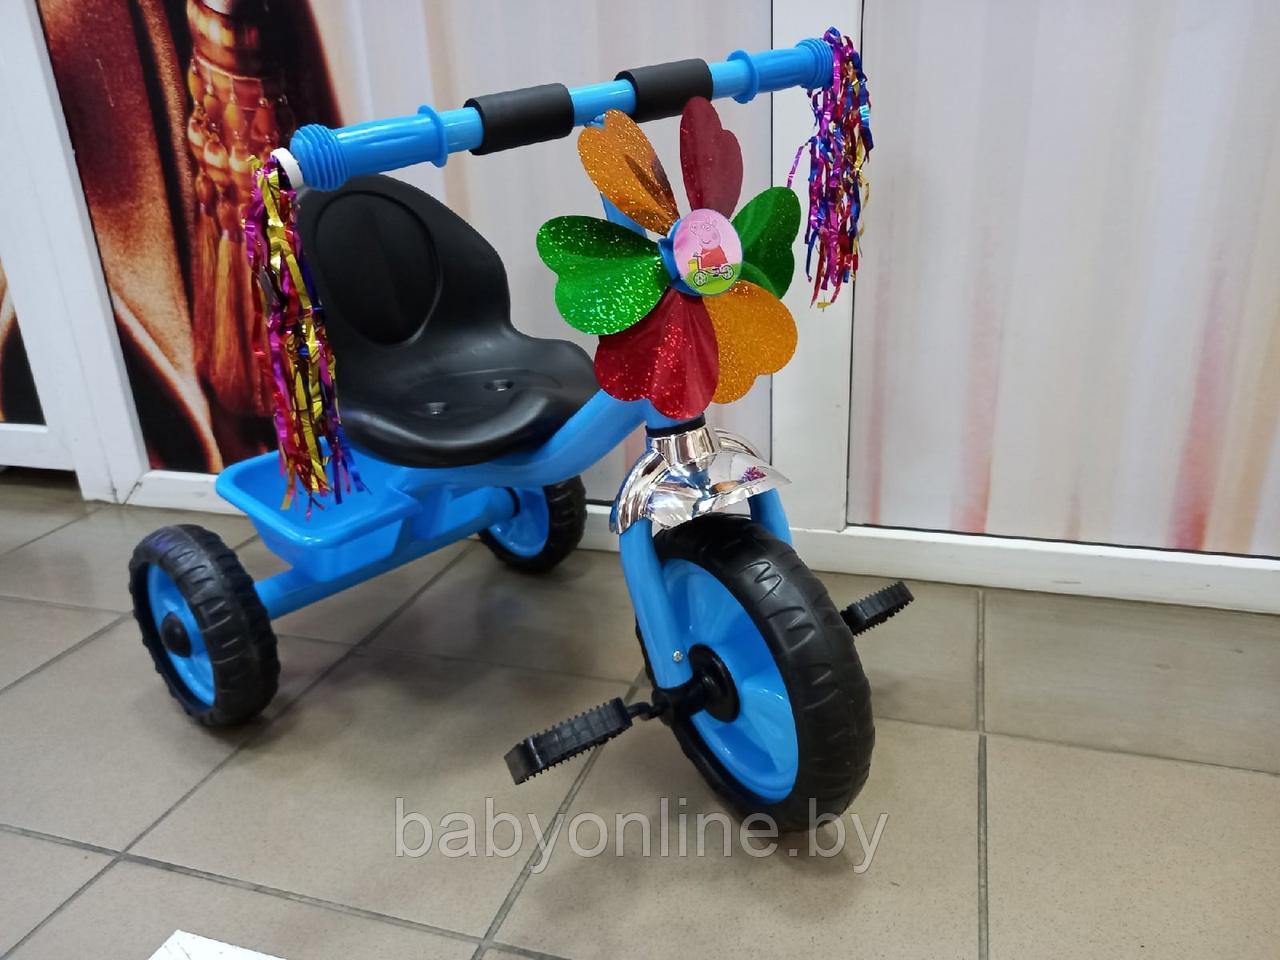 Детский велосипед трехколесный арт 1-23 от 1 до 3 лет голубой